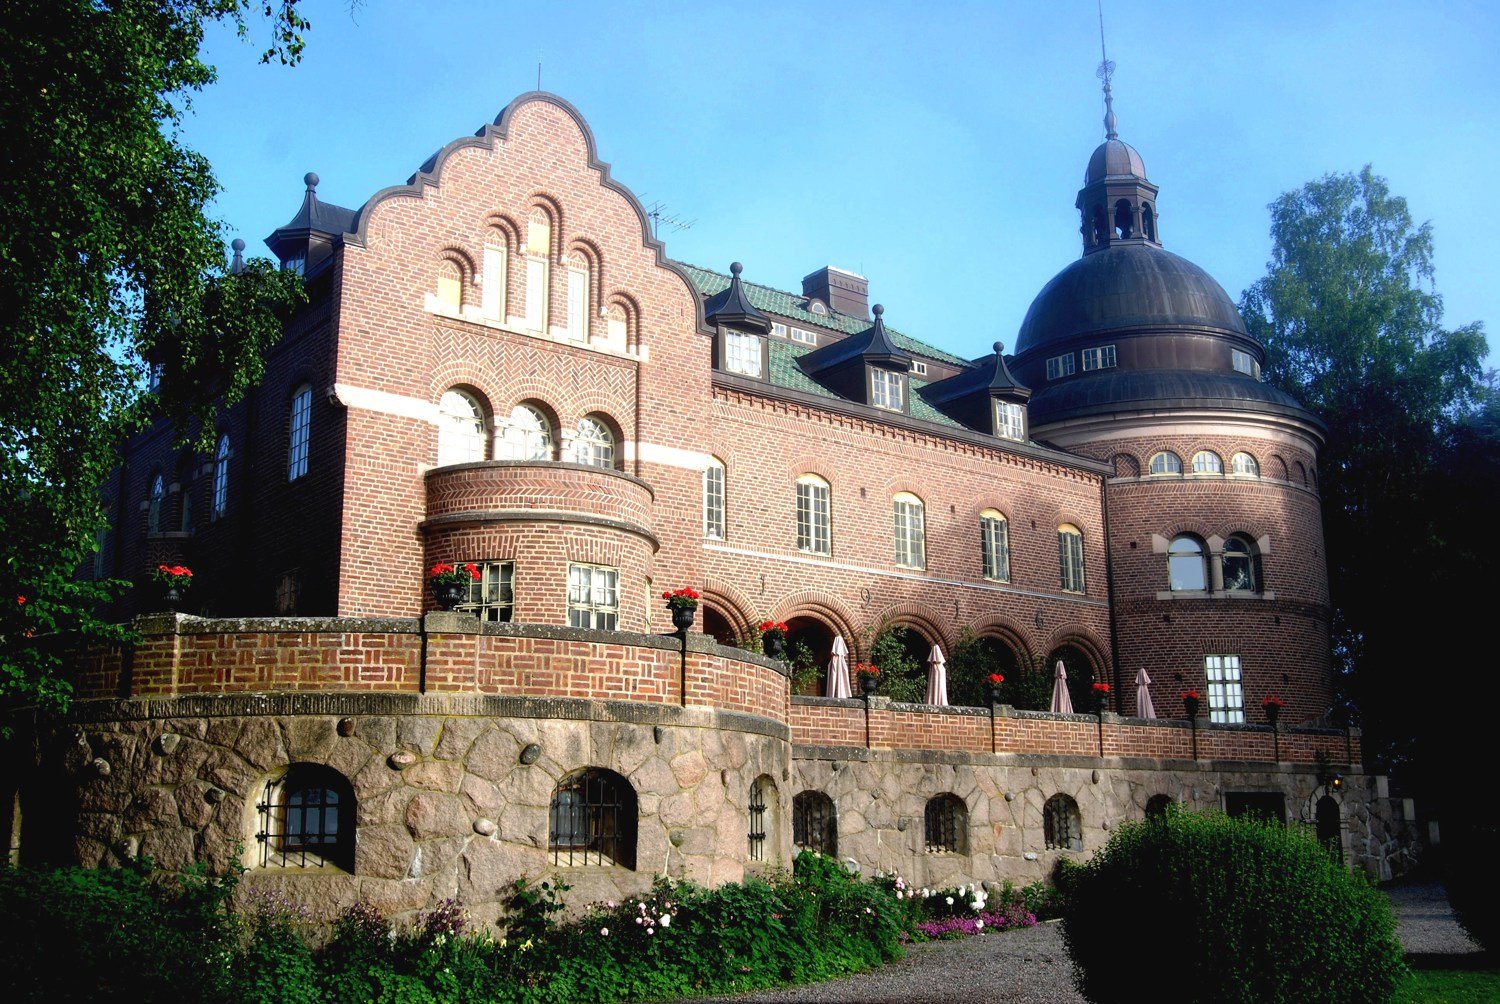 Engsholms slott